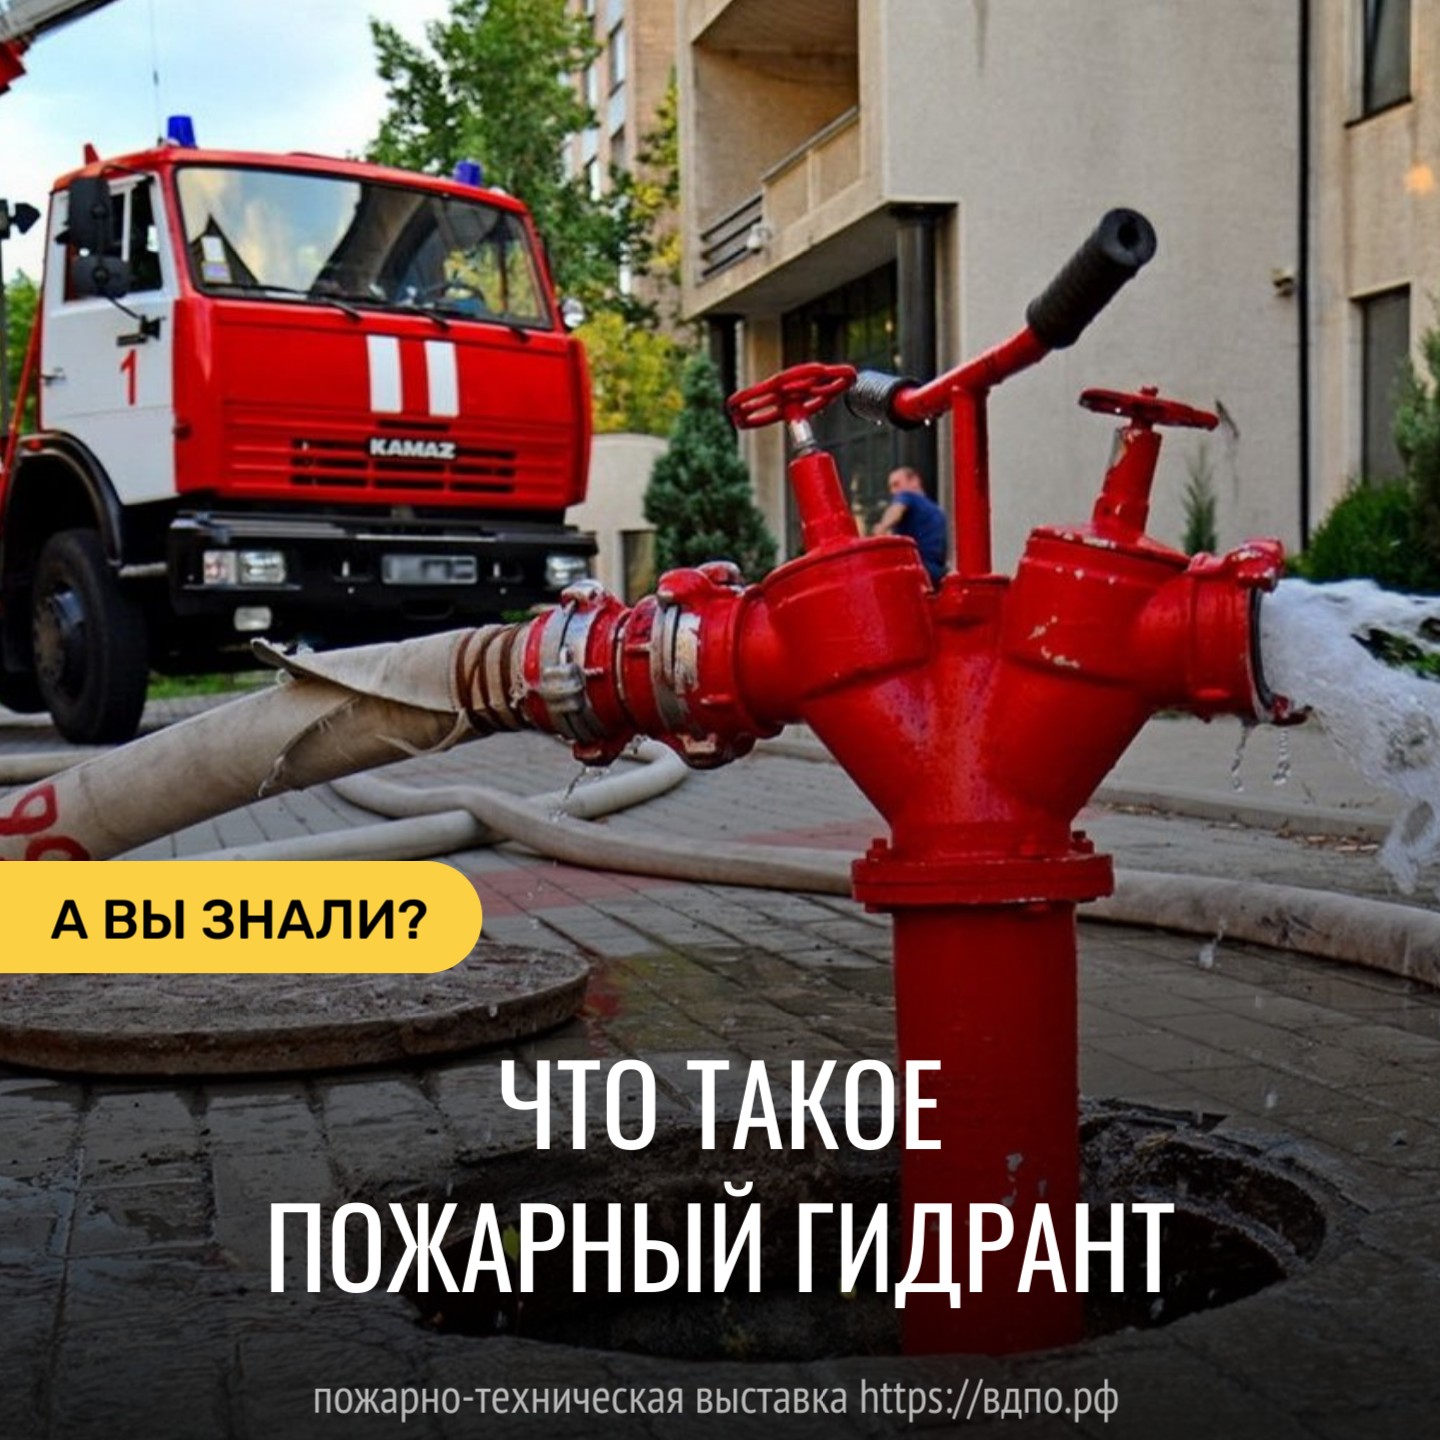 Что такое пожарный гидрант  ЗНАЕТЕ ЛИ ВЫ… что такое пожарный гидрант? 
 Пожарный гидрант - инженерное устройство на......